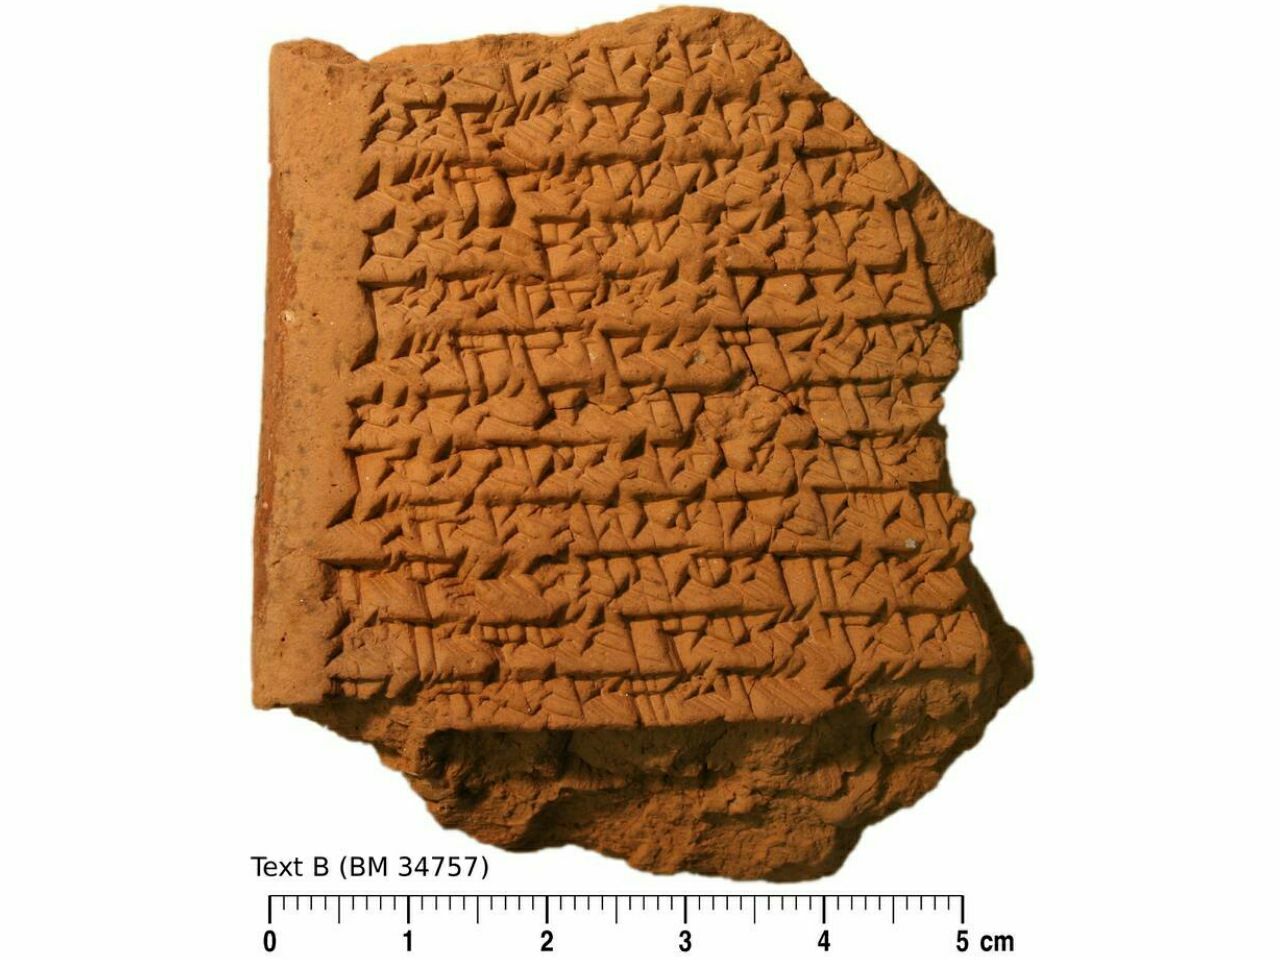 Starodavne babilonske tablete